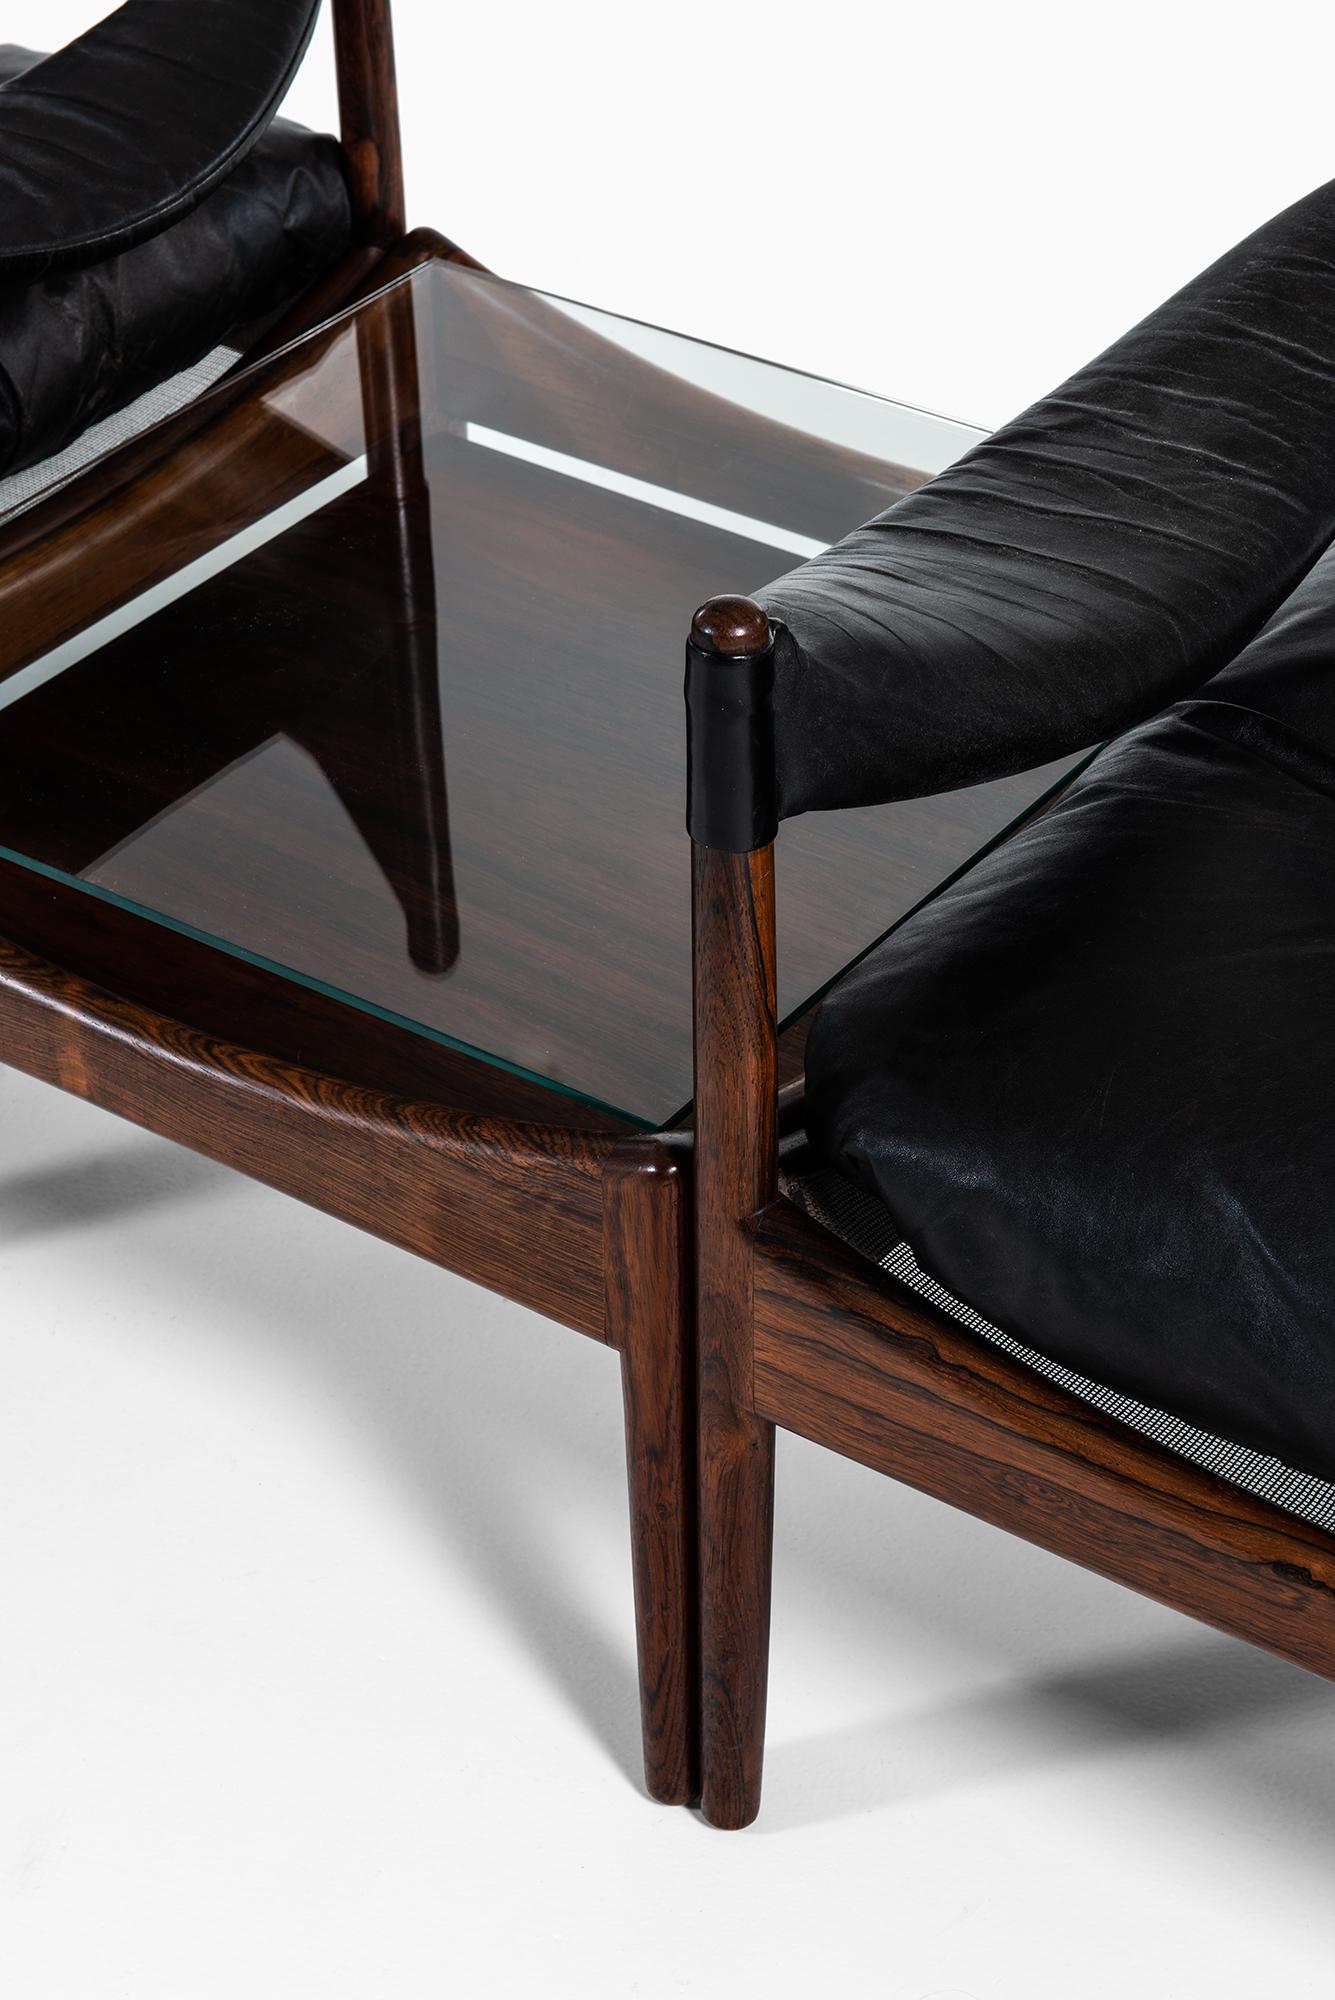 Rare ensemble de 3 fauteuils avec table d'appoint modèle Modus conçu par Kristian Solmer Vedel. Produit par Søren Willadsen møbelfabrik au Danemark.